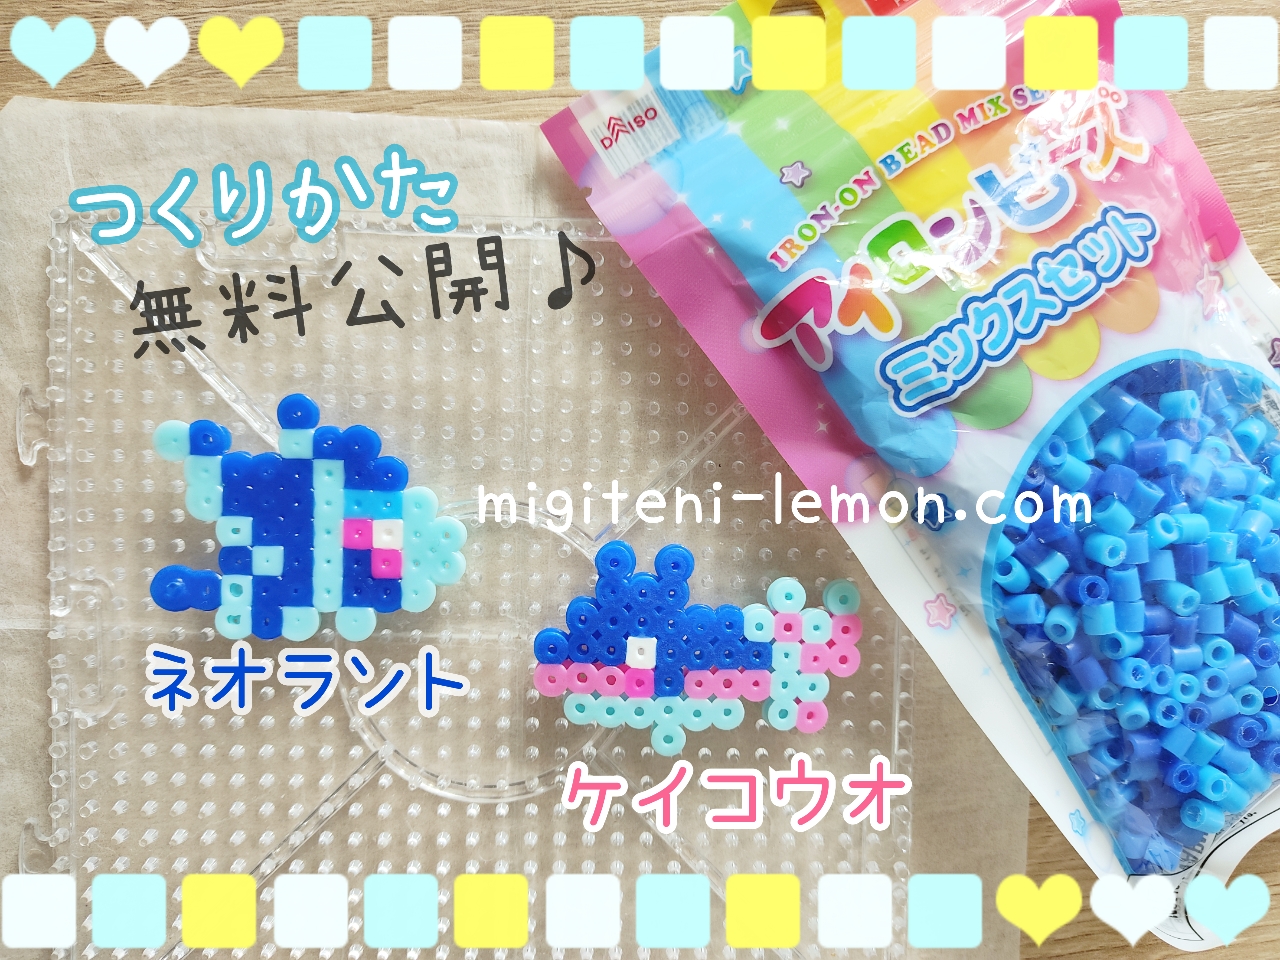 keikouo-finneon-neoranto-lumineon-pokemon-beads-handmade-zuan